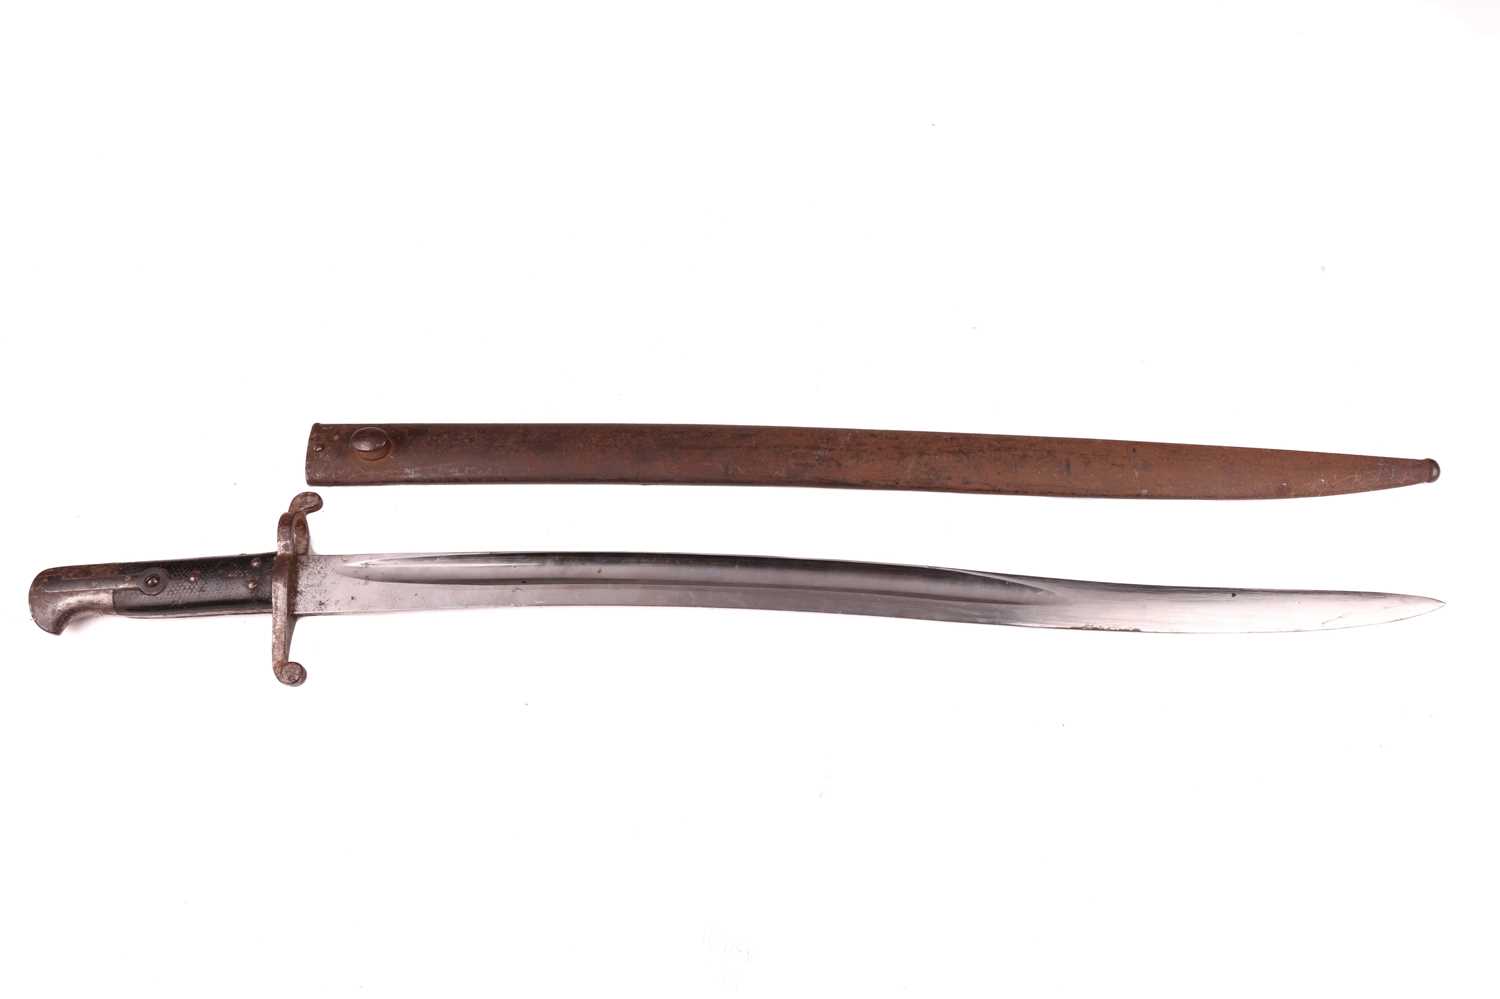 A British 1853 pattern 2nd pattern yatagan bayonet, the hilt marked RMFA 50.